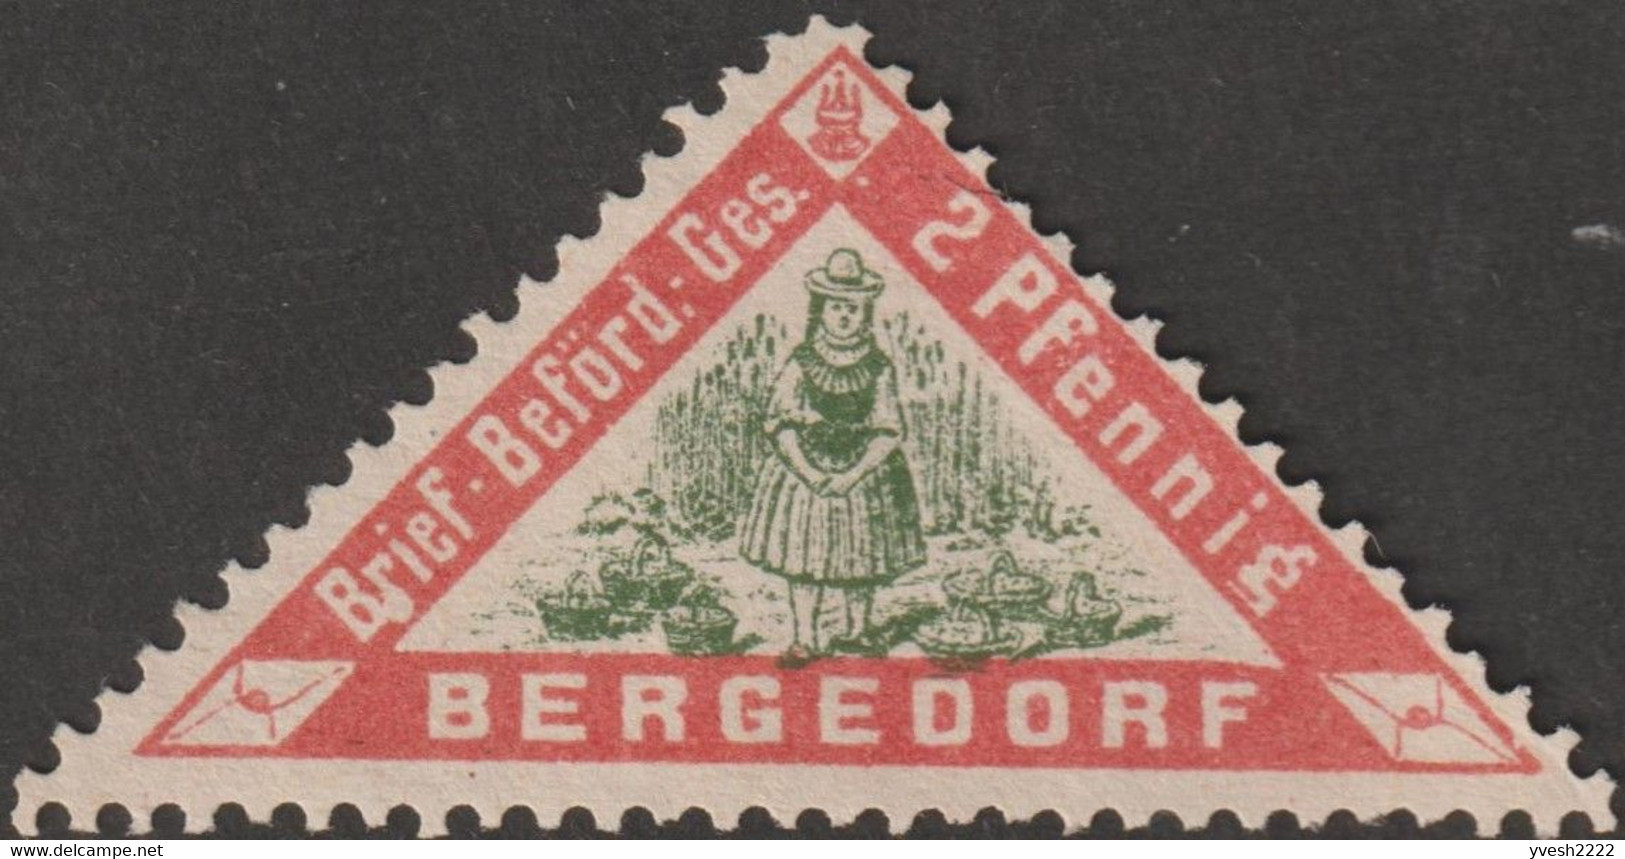 Bergedorf 1887 Michel 1. Poste PrivéeBrief-Beförderungs-Gesellschaft. Paysanne Avec Des Paniers De Fruits - Agriculture